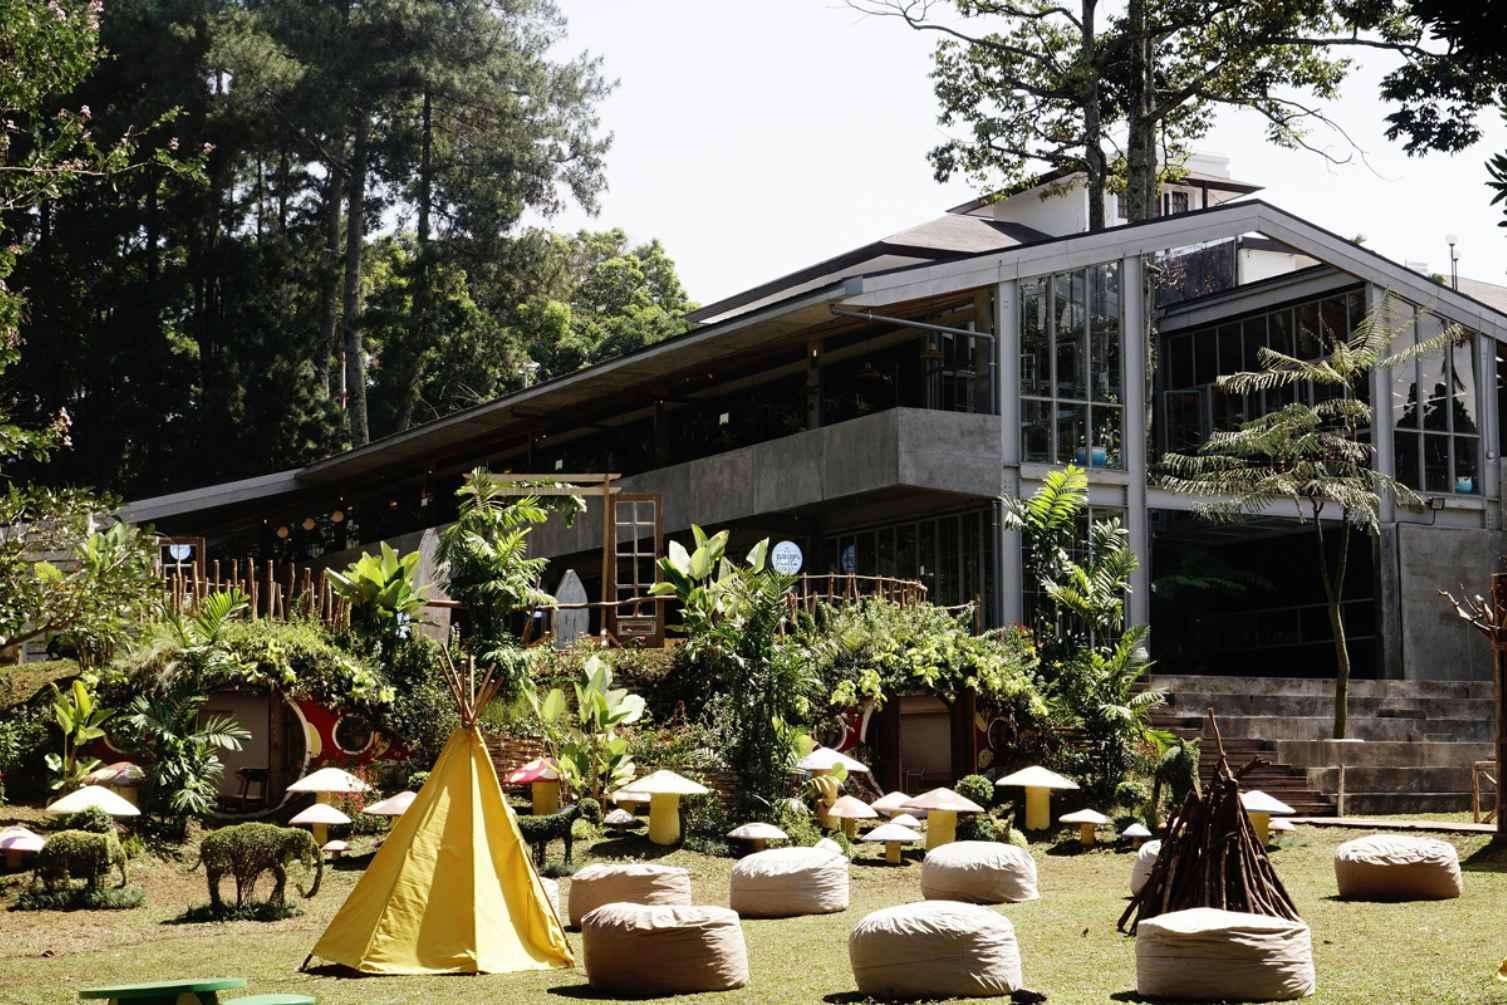 Nara Park Bandung, Tempat Hangout Kekinian Untuk Semua Kalangan